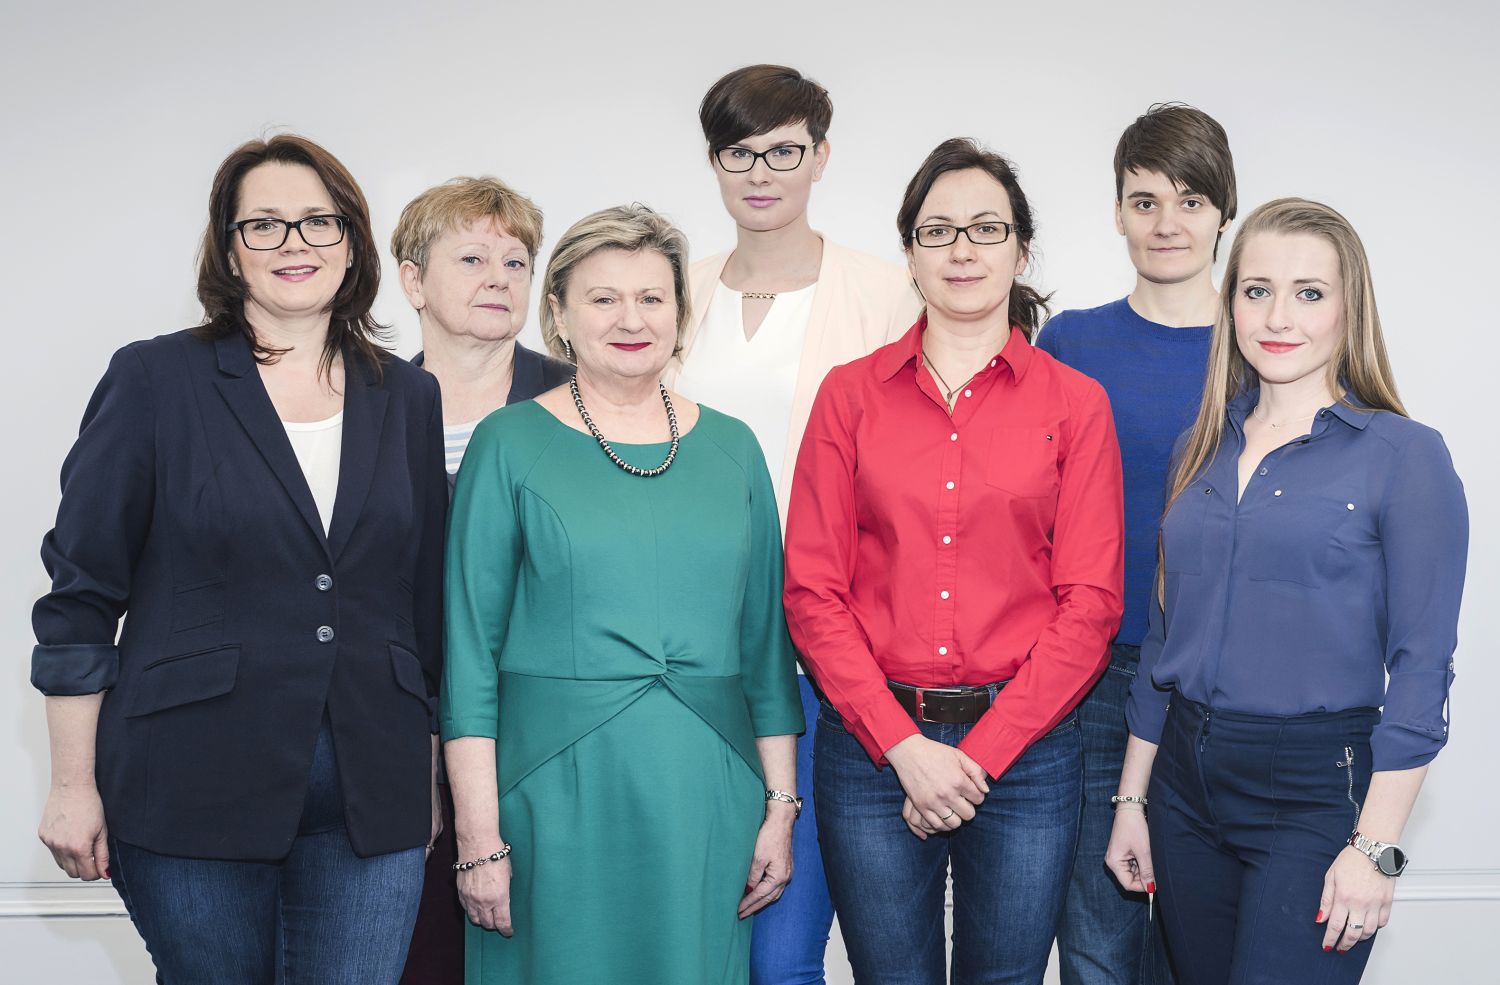 Od lewej: Anna Bombińska, prof. Małgorzata Węsierska, prof. Elżbieta Szeląg, Magdalena Baszuk, Aneta Szymaszek, Katarzyna Jabłońska, Anna Dacewicz.	